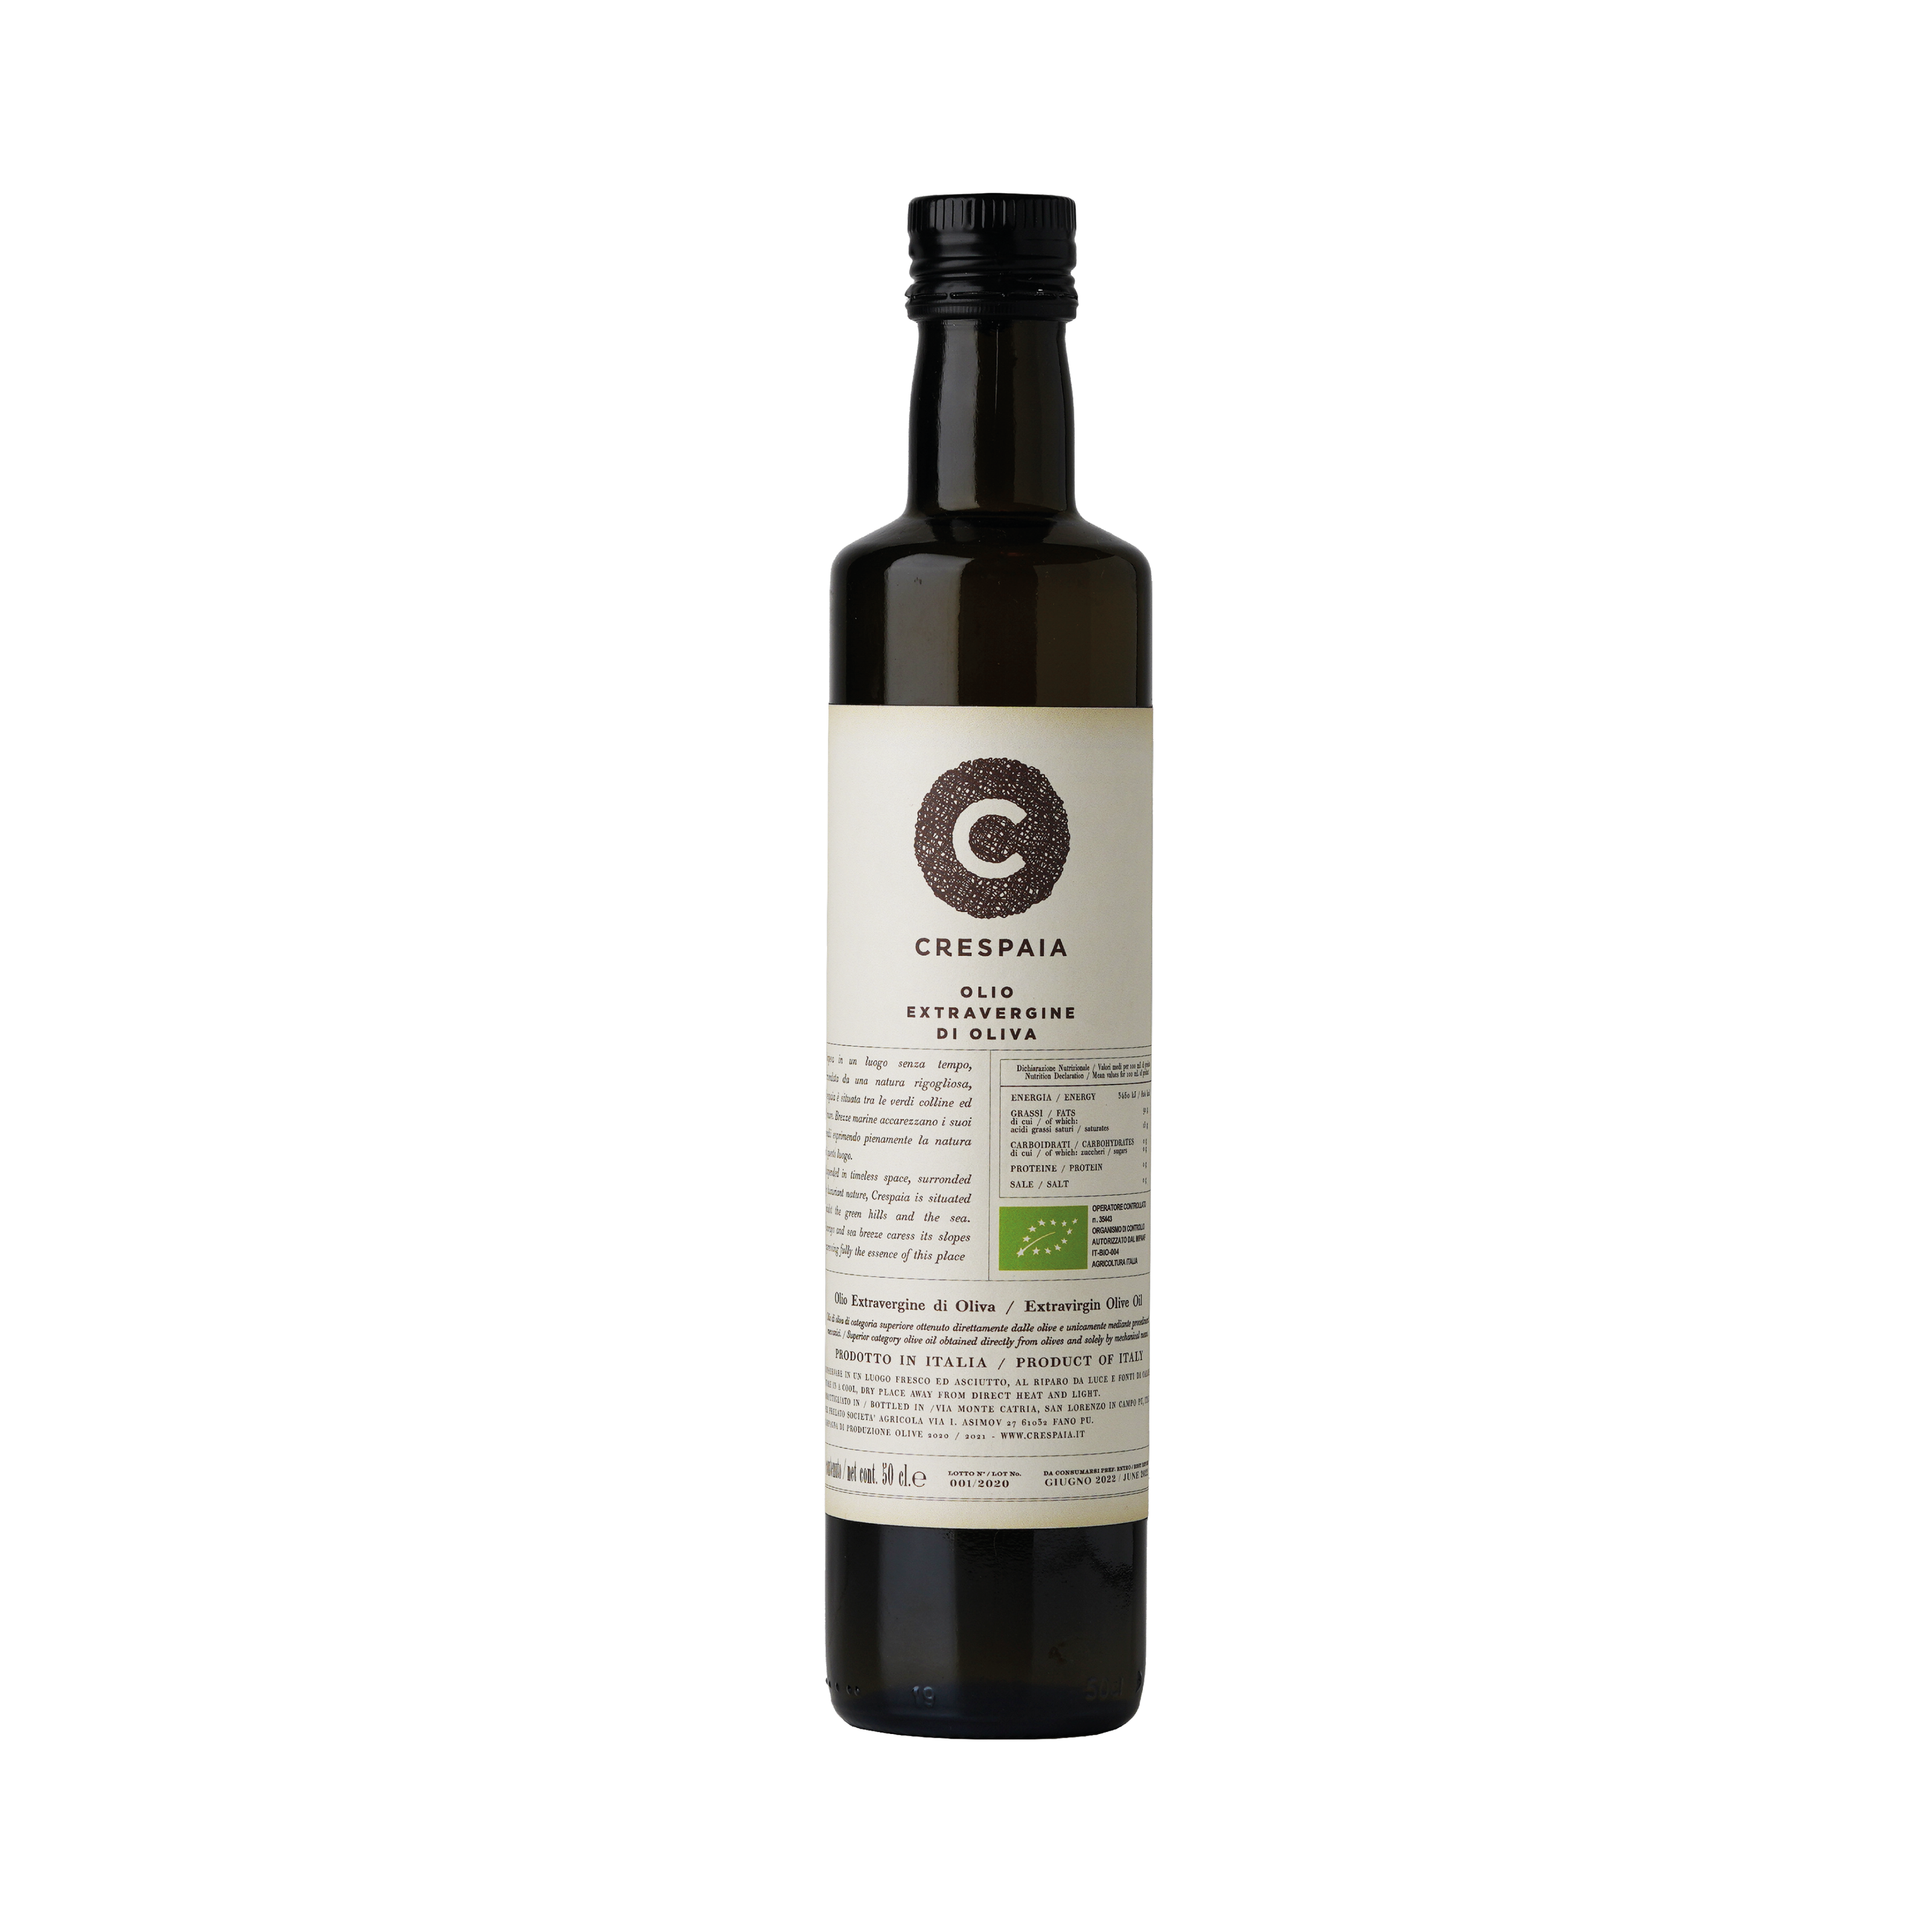 Crespaia e Olio EVO biologico: è un prodotto che racconta a fondo il nostro territorio. La qualità delle olive è marchigiana e utilizziamo solo olive proveniente dalle nostre piante presenti nella tenuta.